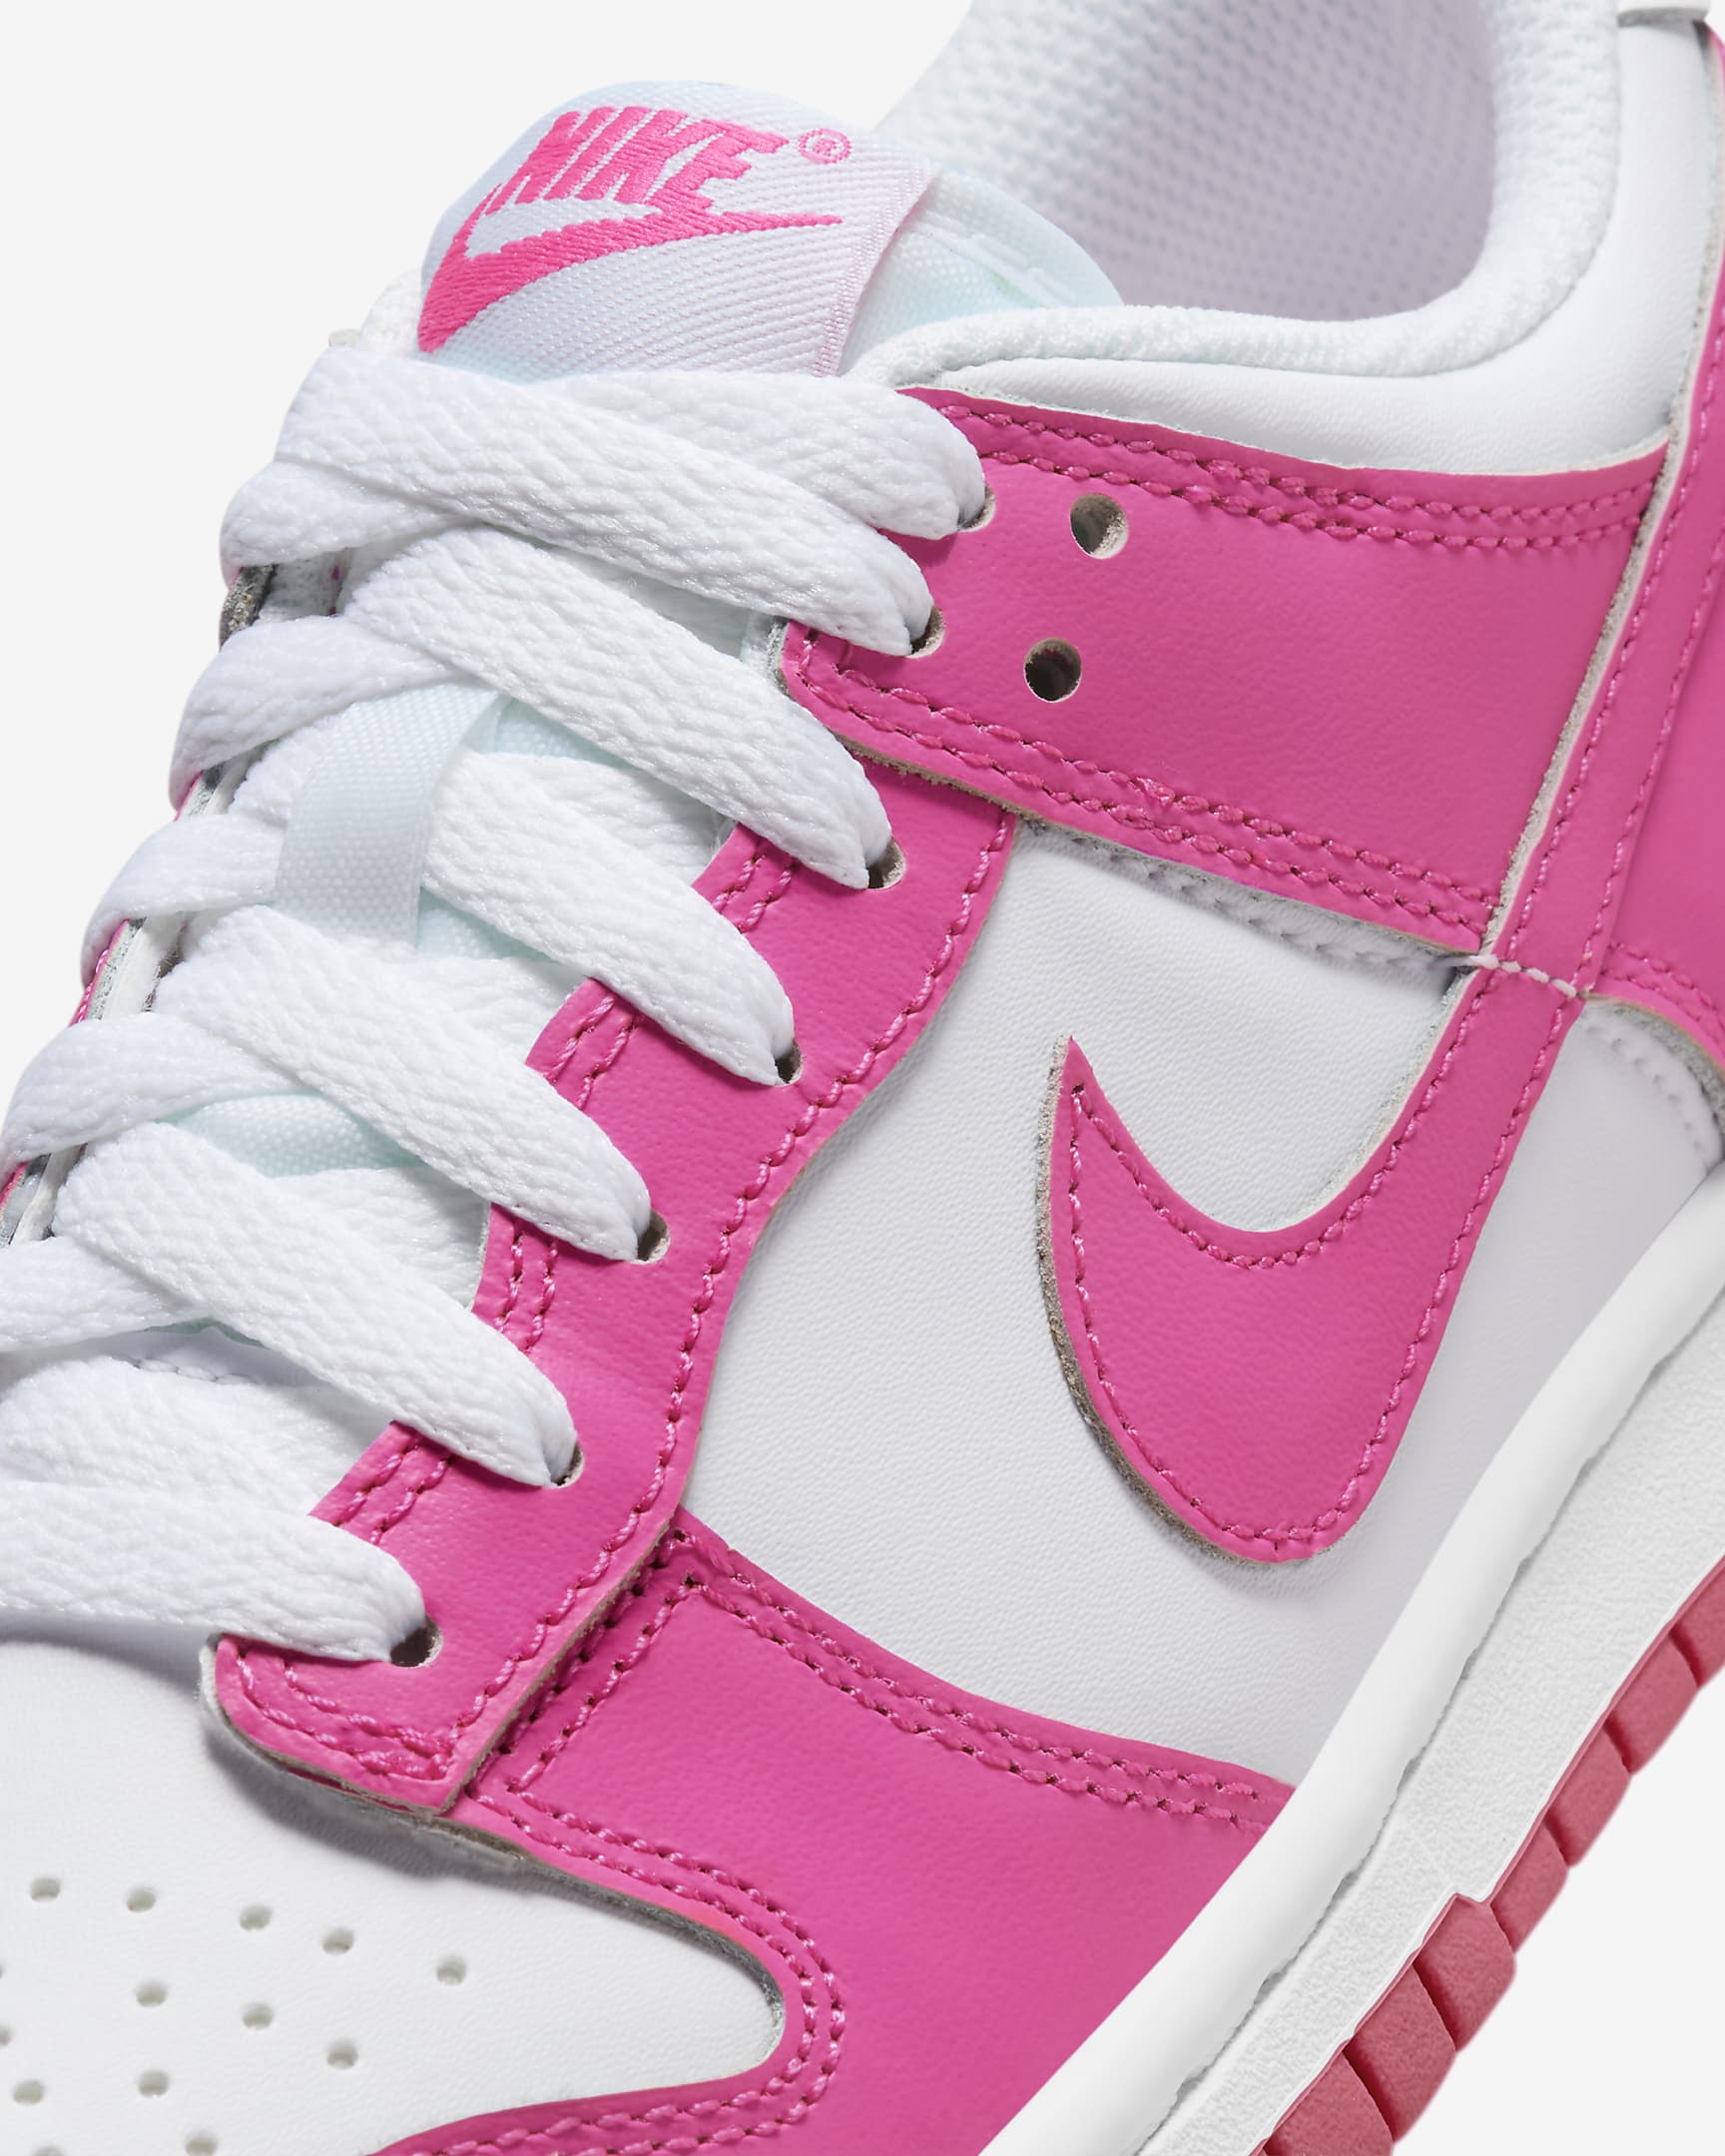 Nike Dunk Low Schuh für ältere Kinder - Weiß/Pink/Laser Fuchsia